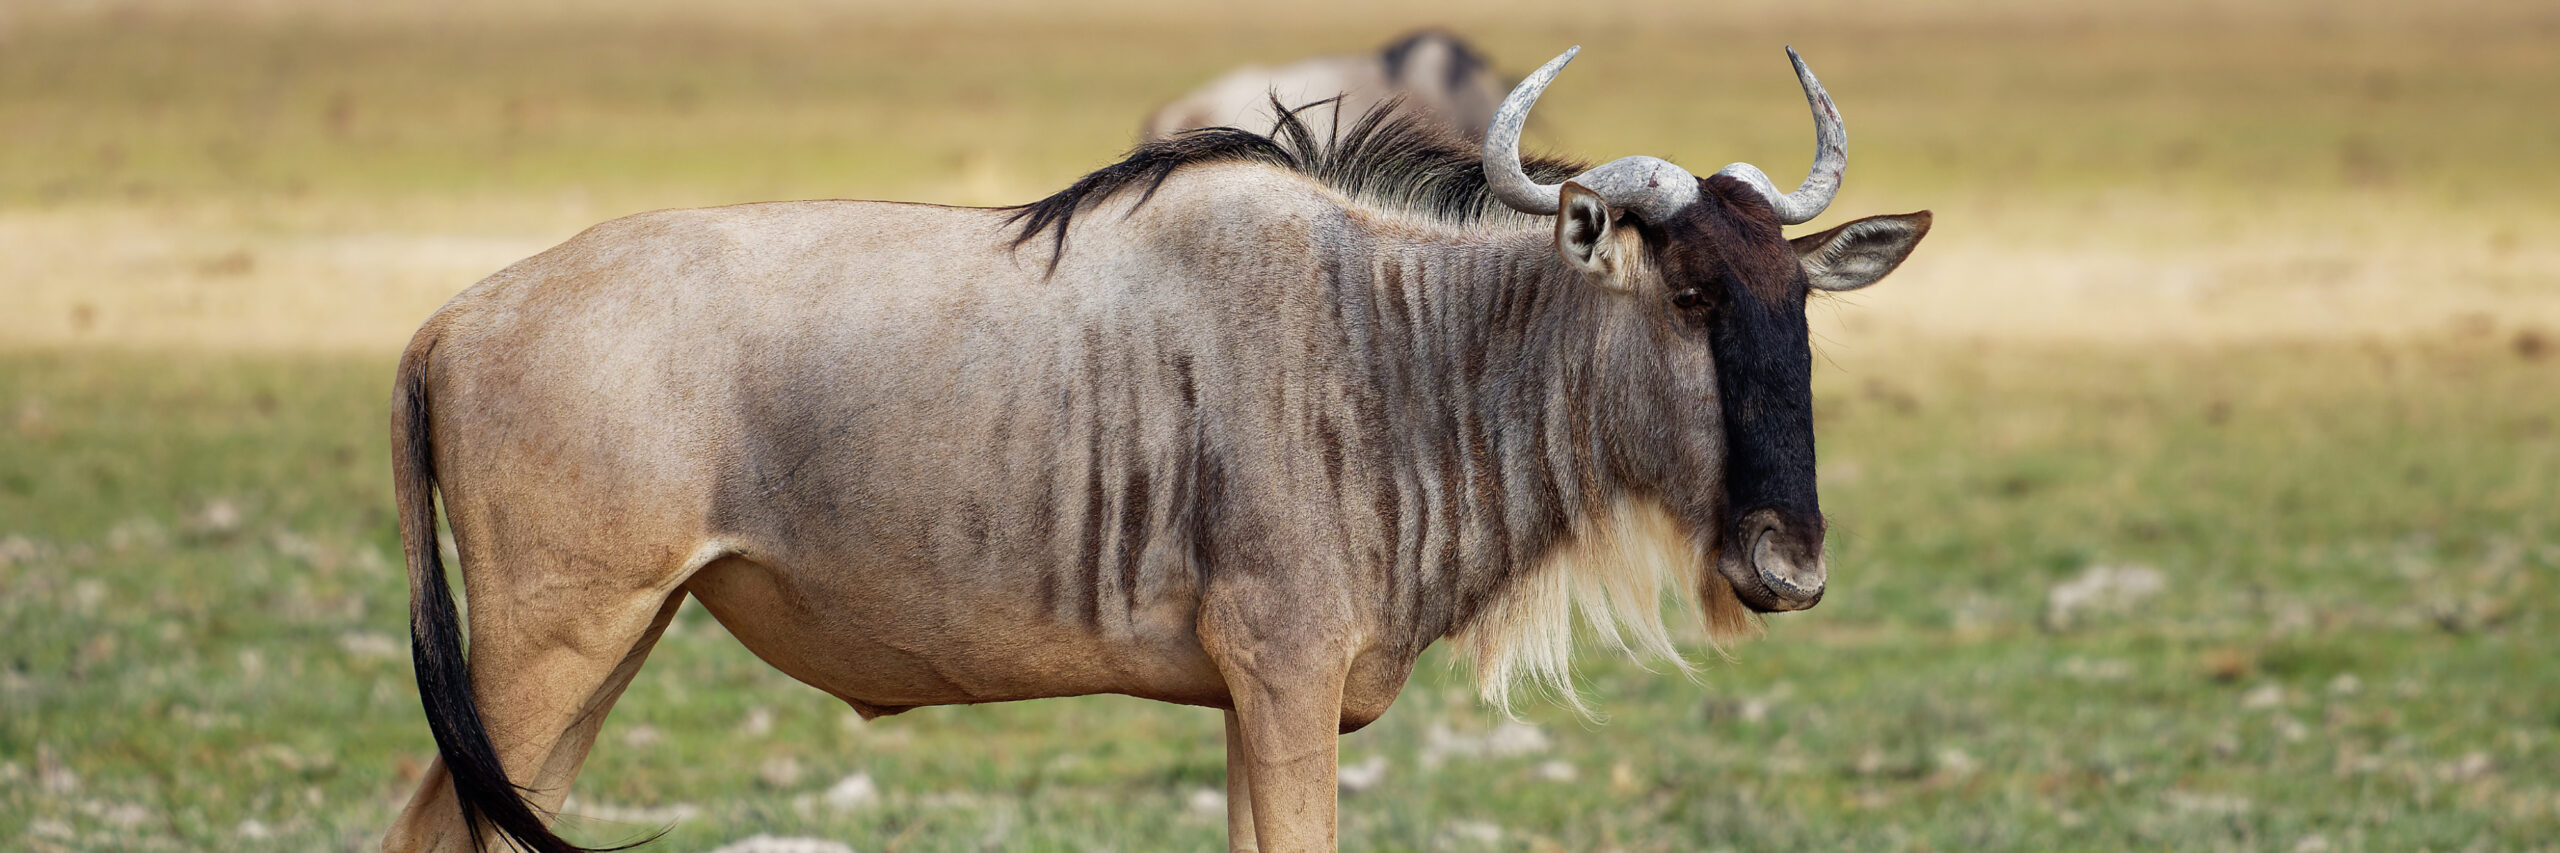 wildebeest-whitebearded